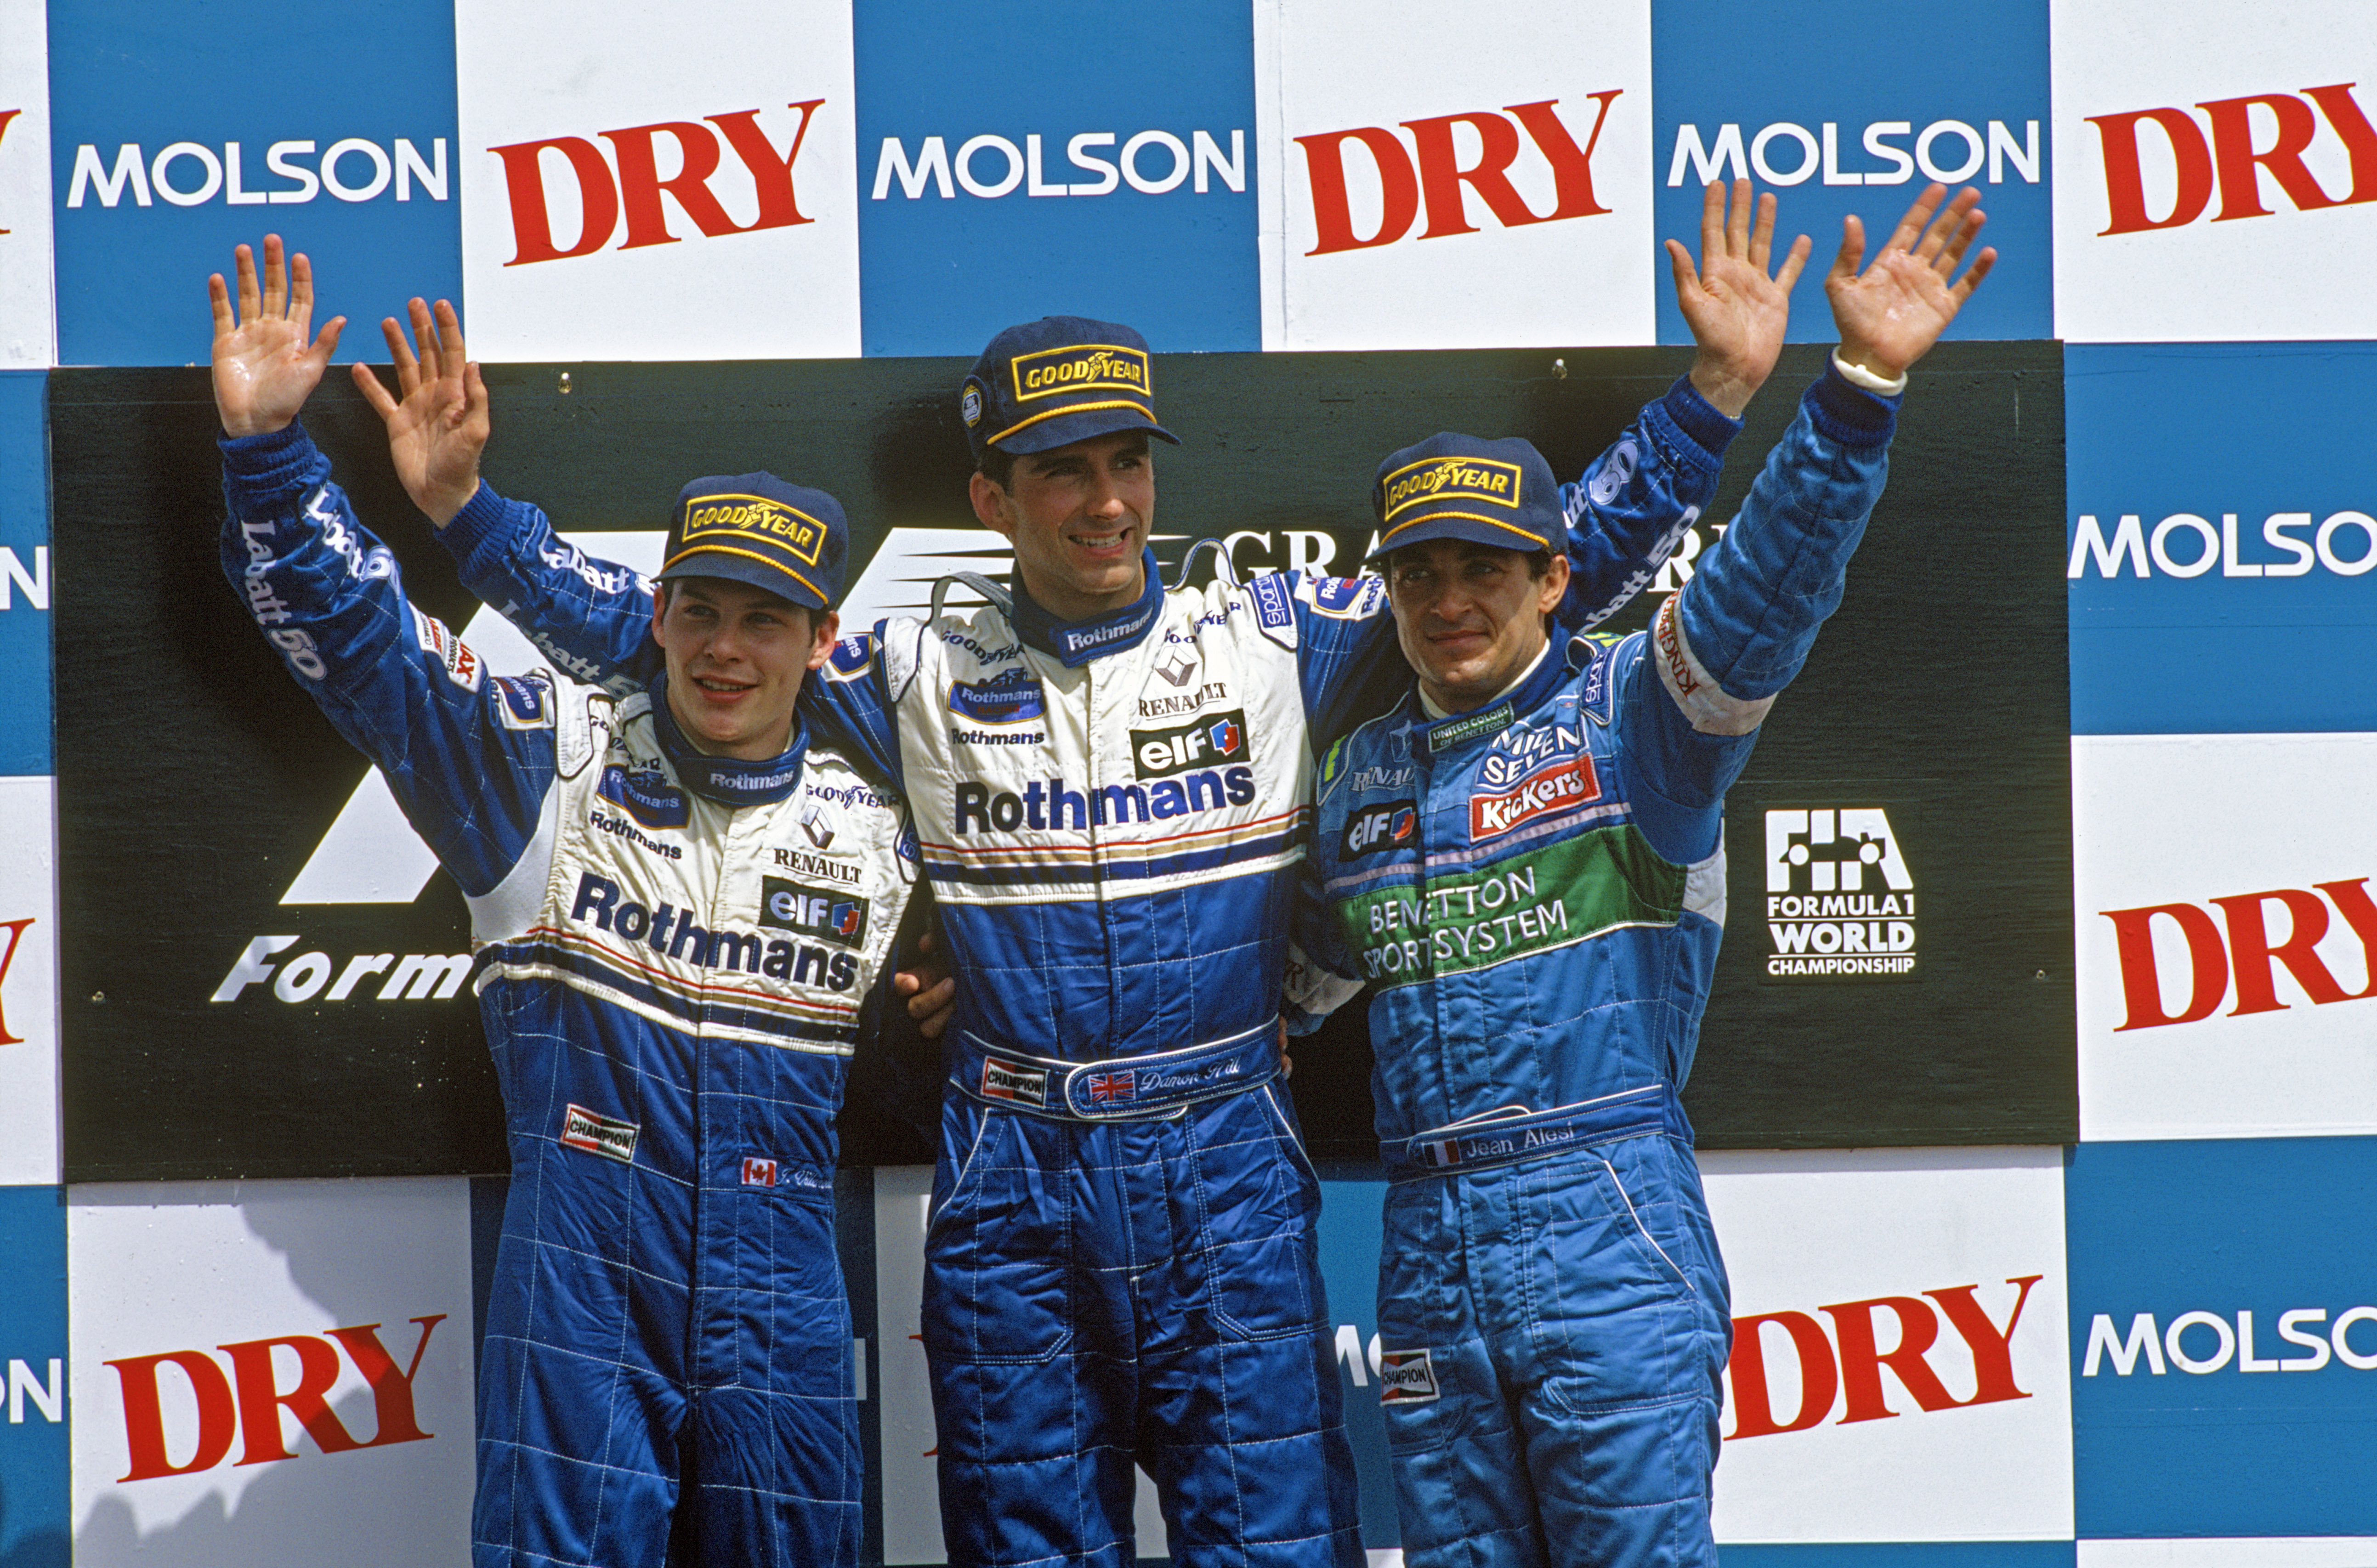 Året er 1996 og Williams dominerer. Her med Damon Hill øverst på pallen, flankert av sin lagkamerat Jaques Villeneuve, samt Jean Alesi fra Benetton-teamet.